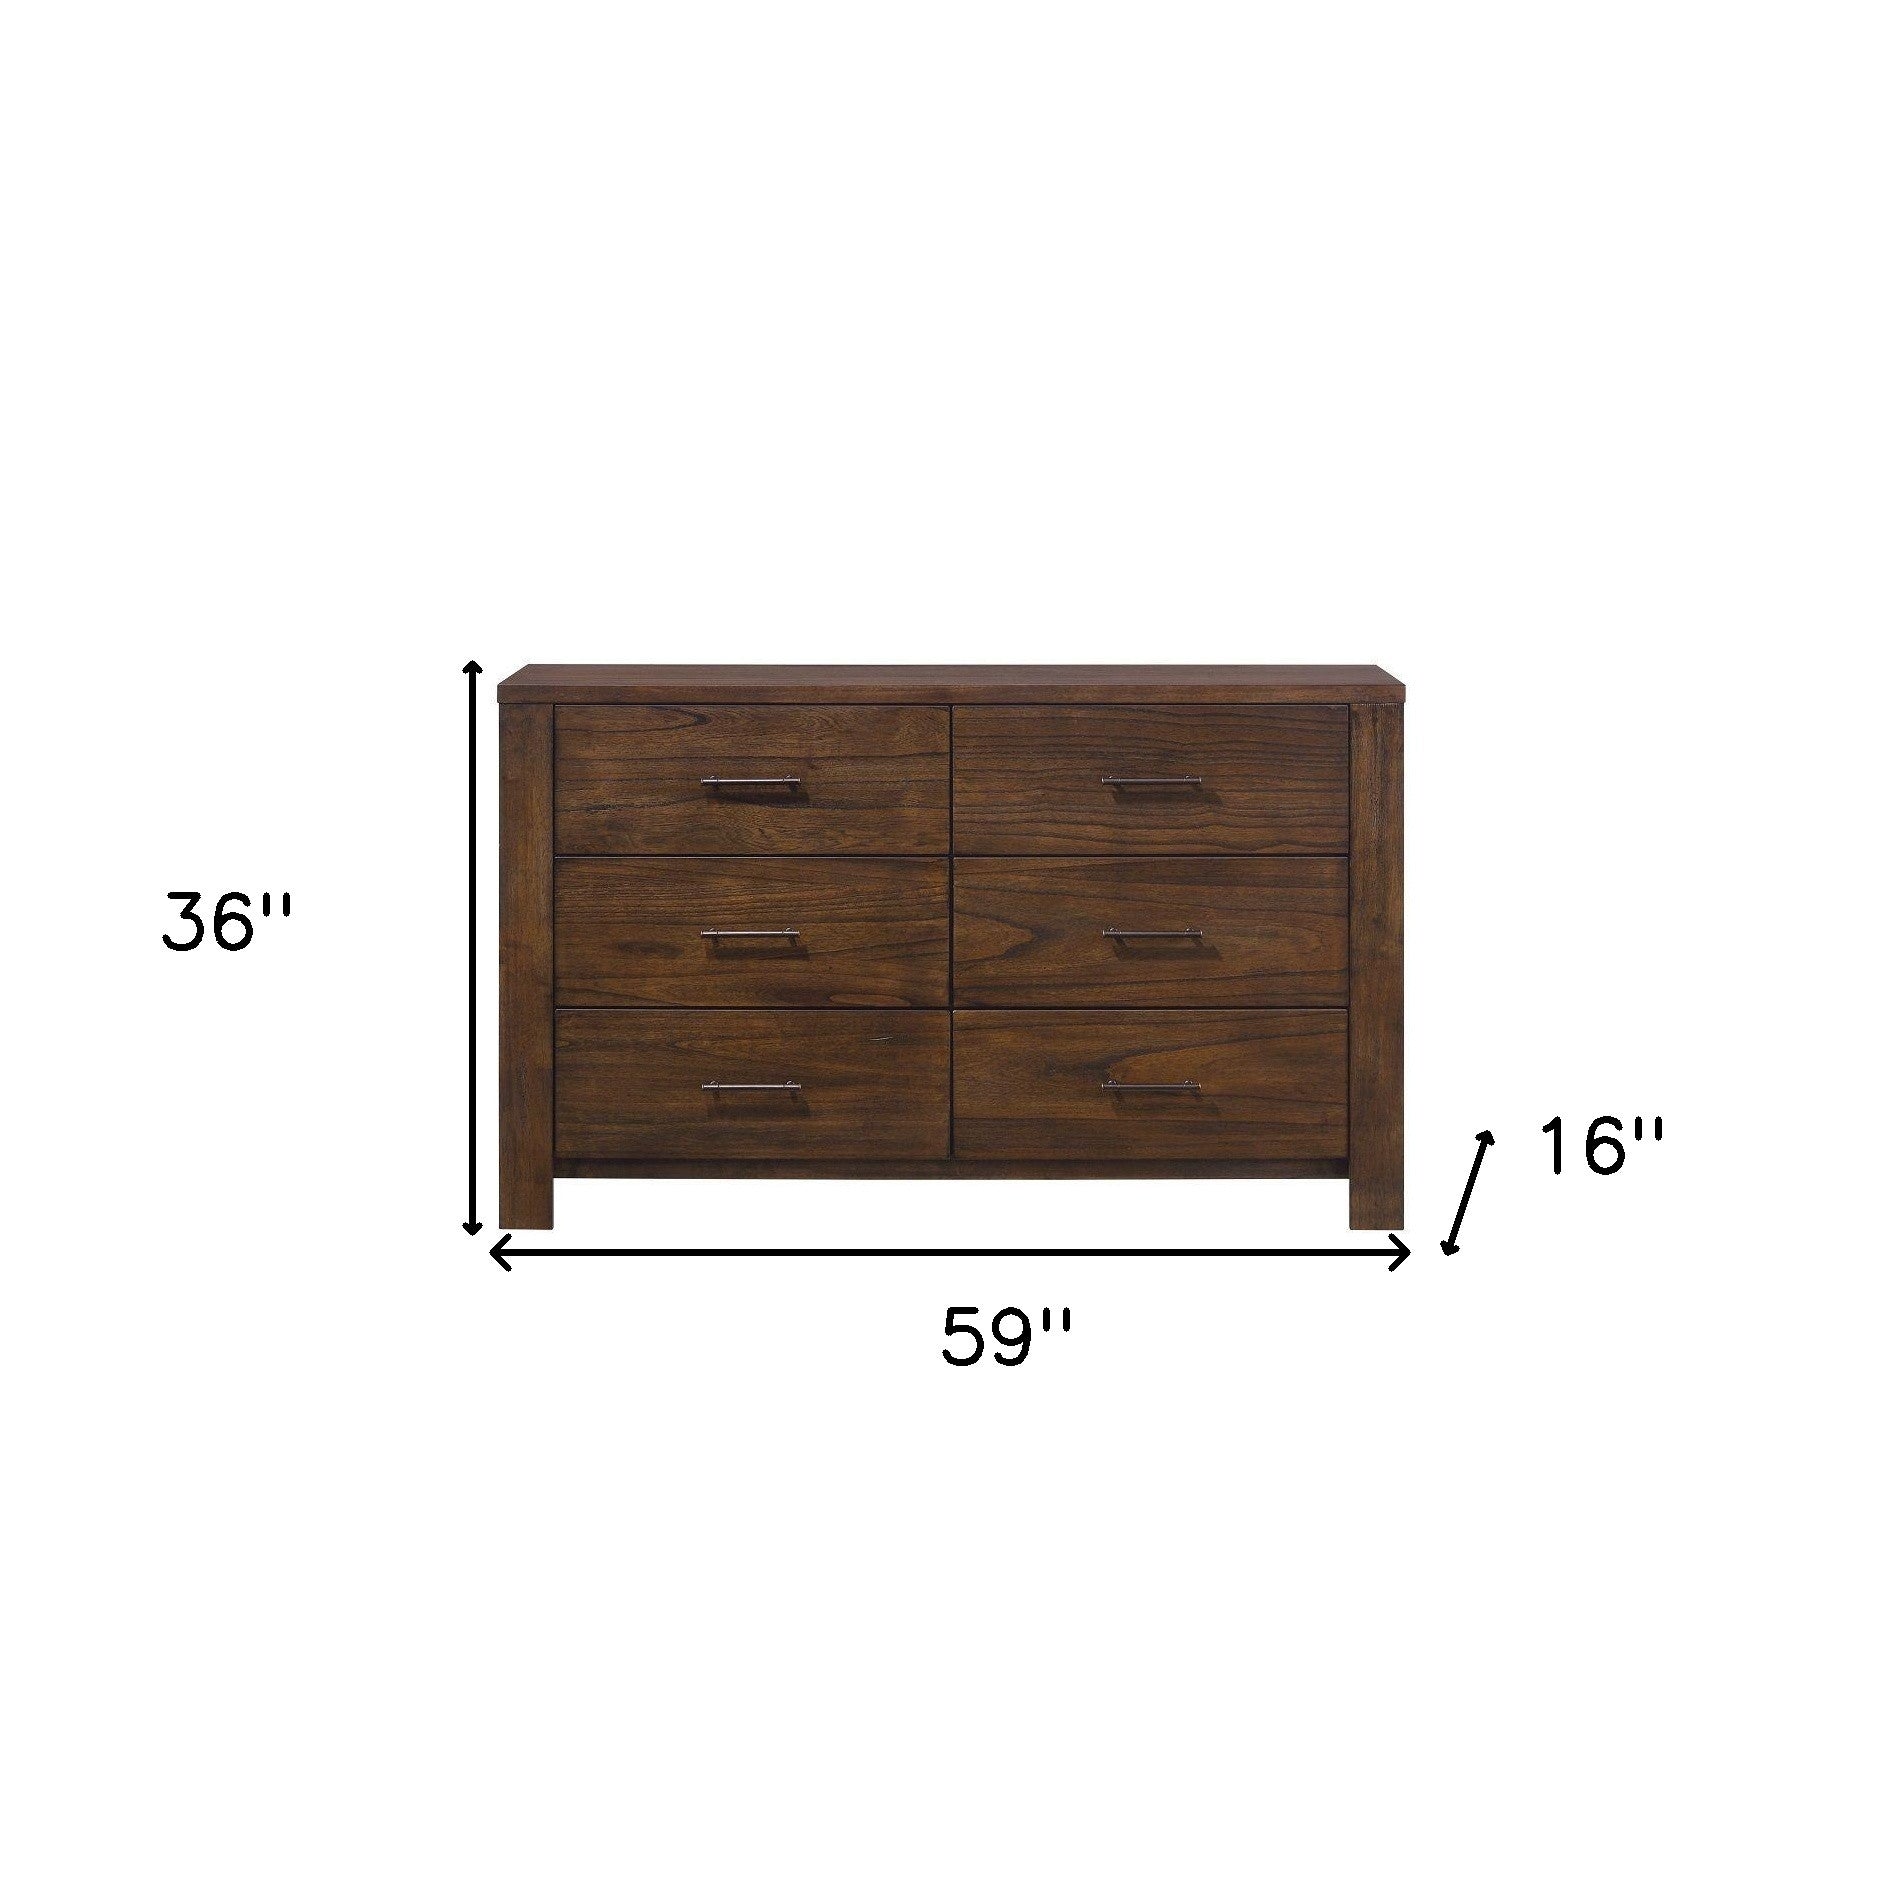 59' X 16' X 36' Oak Metal Dresser